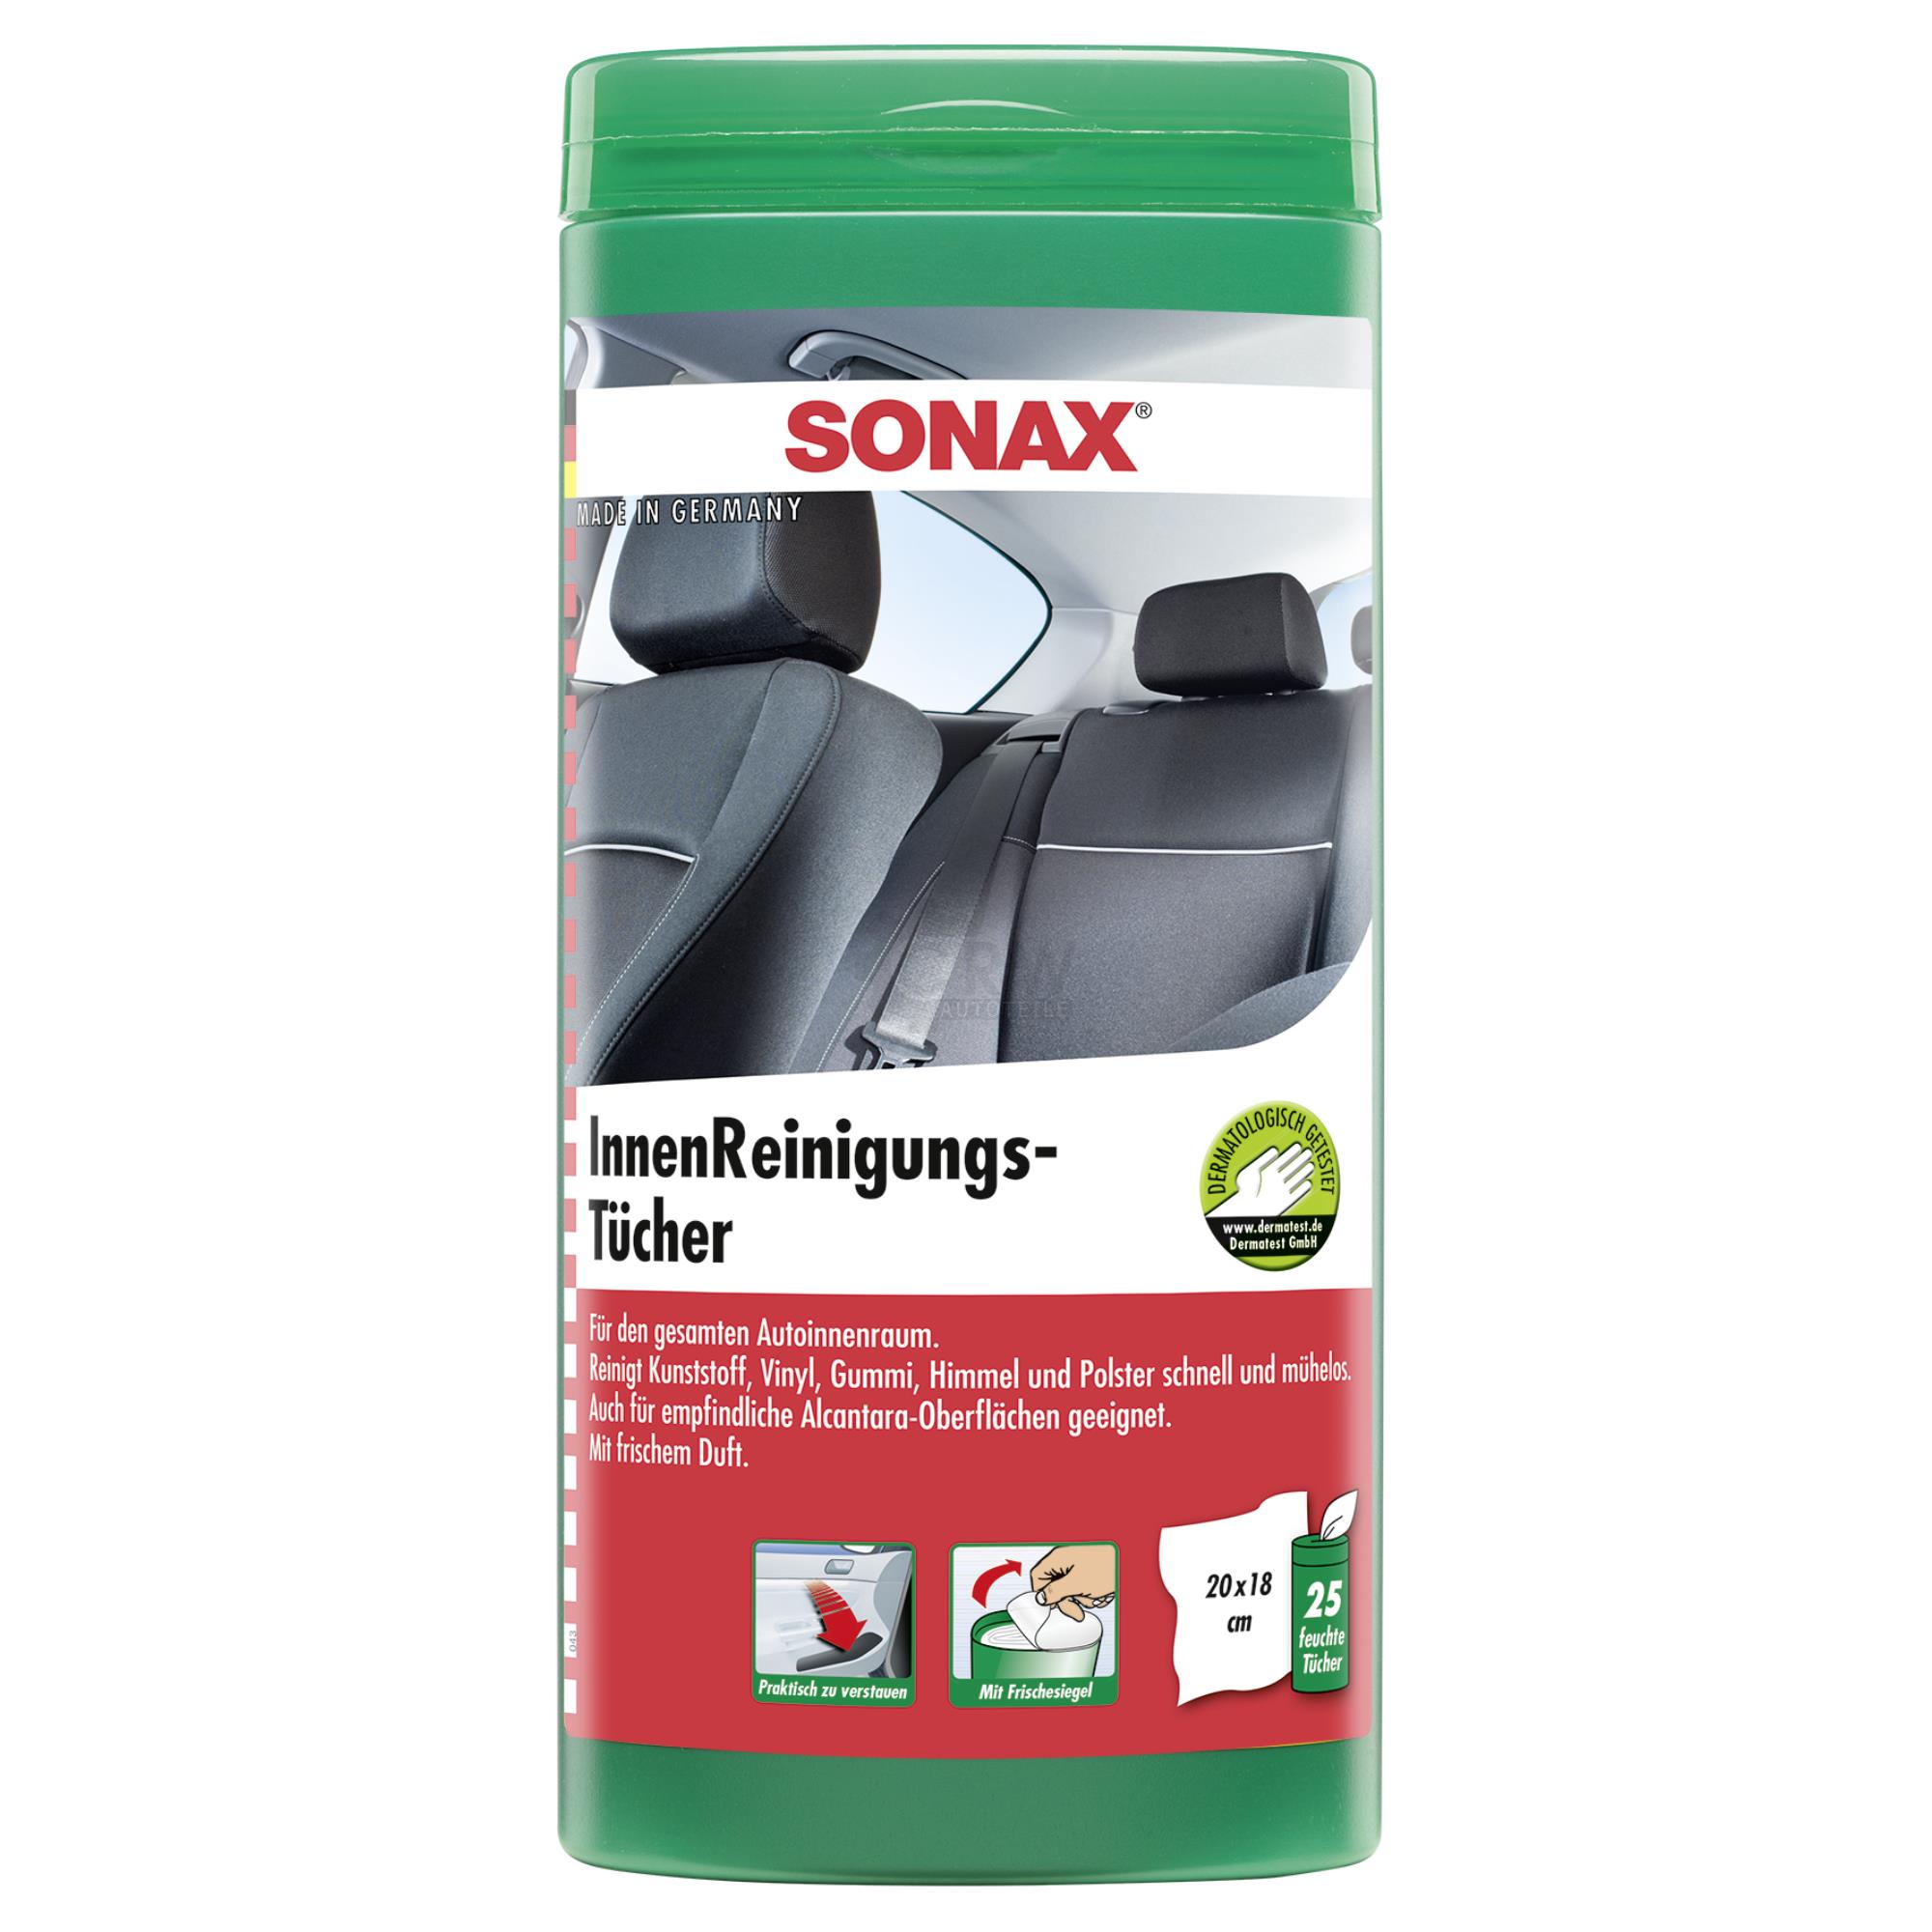 SONAX InnenReinigungsTücher Box Feuchte Tücher Auto Innenraum Pflege